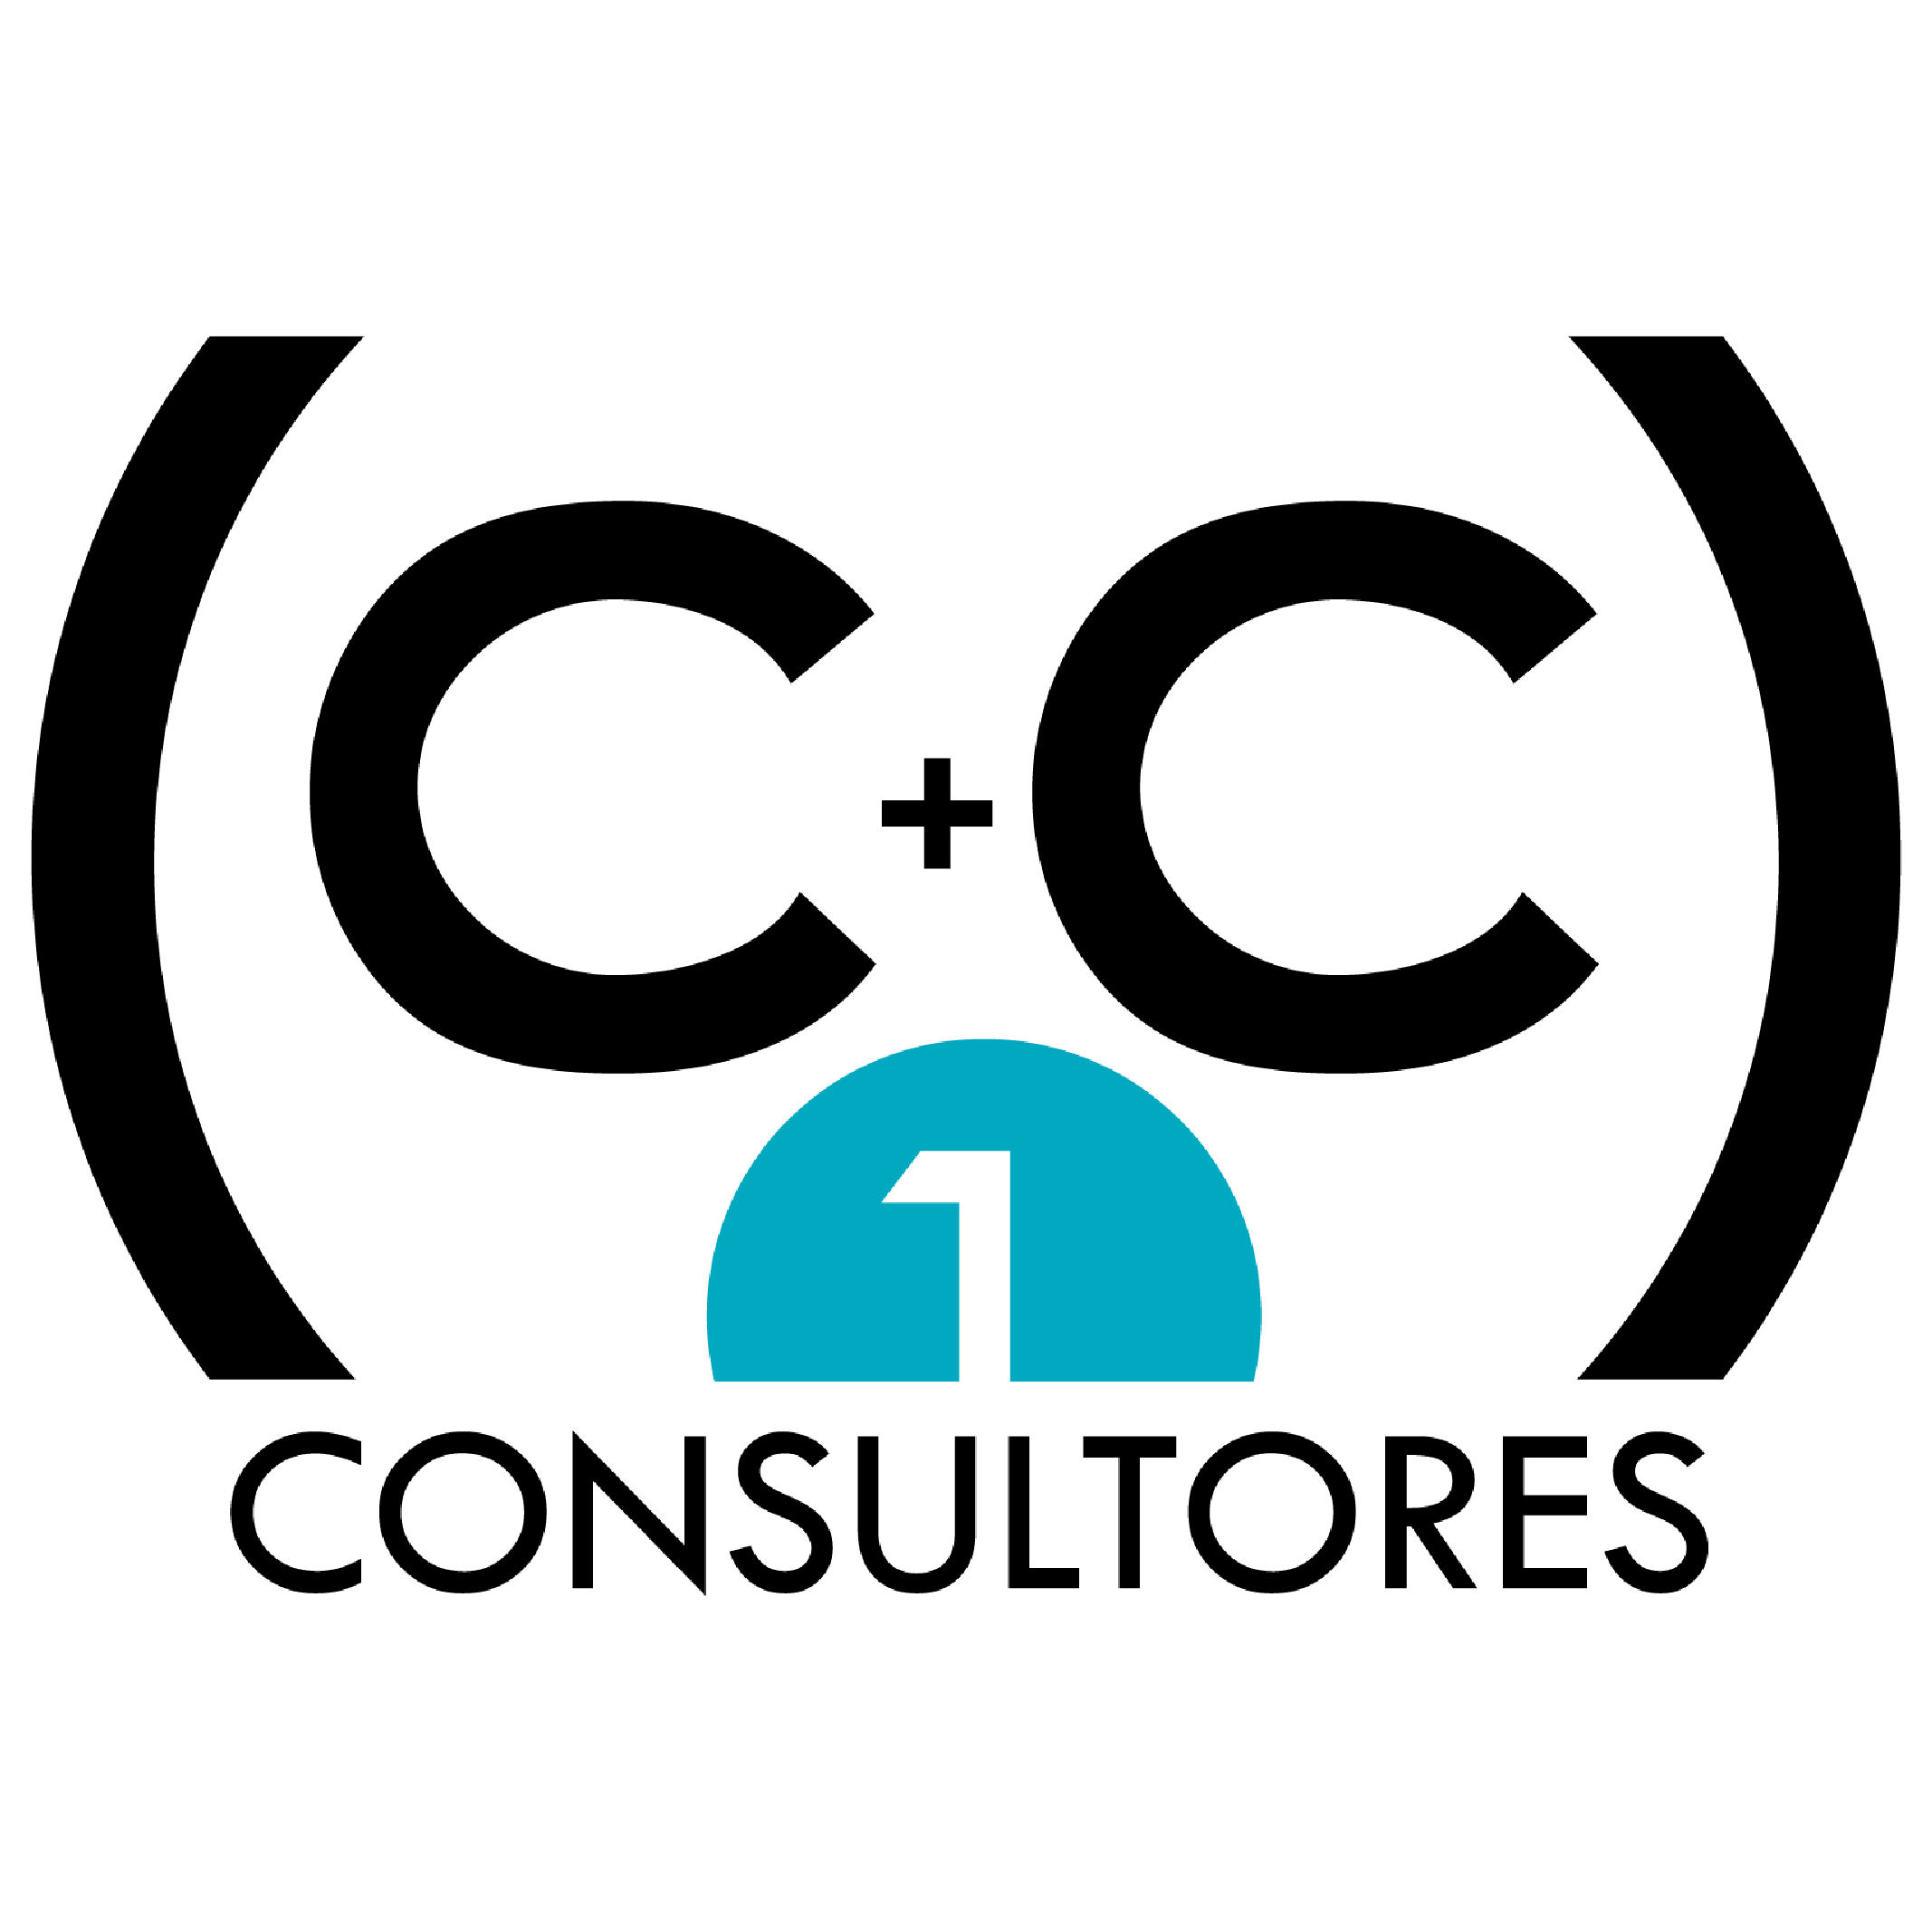 C+C 1 Consultores